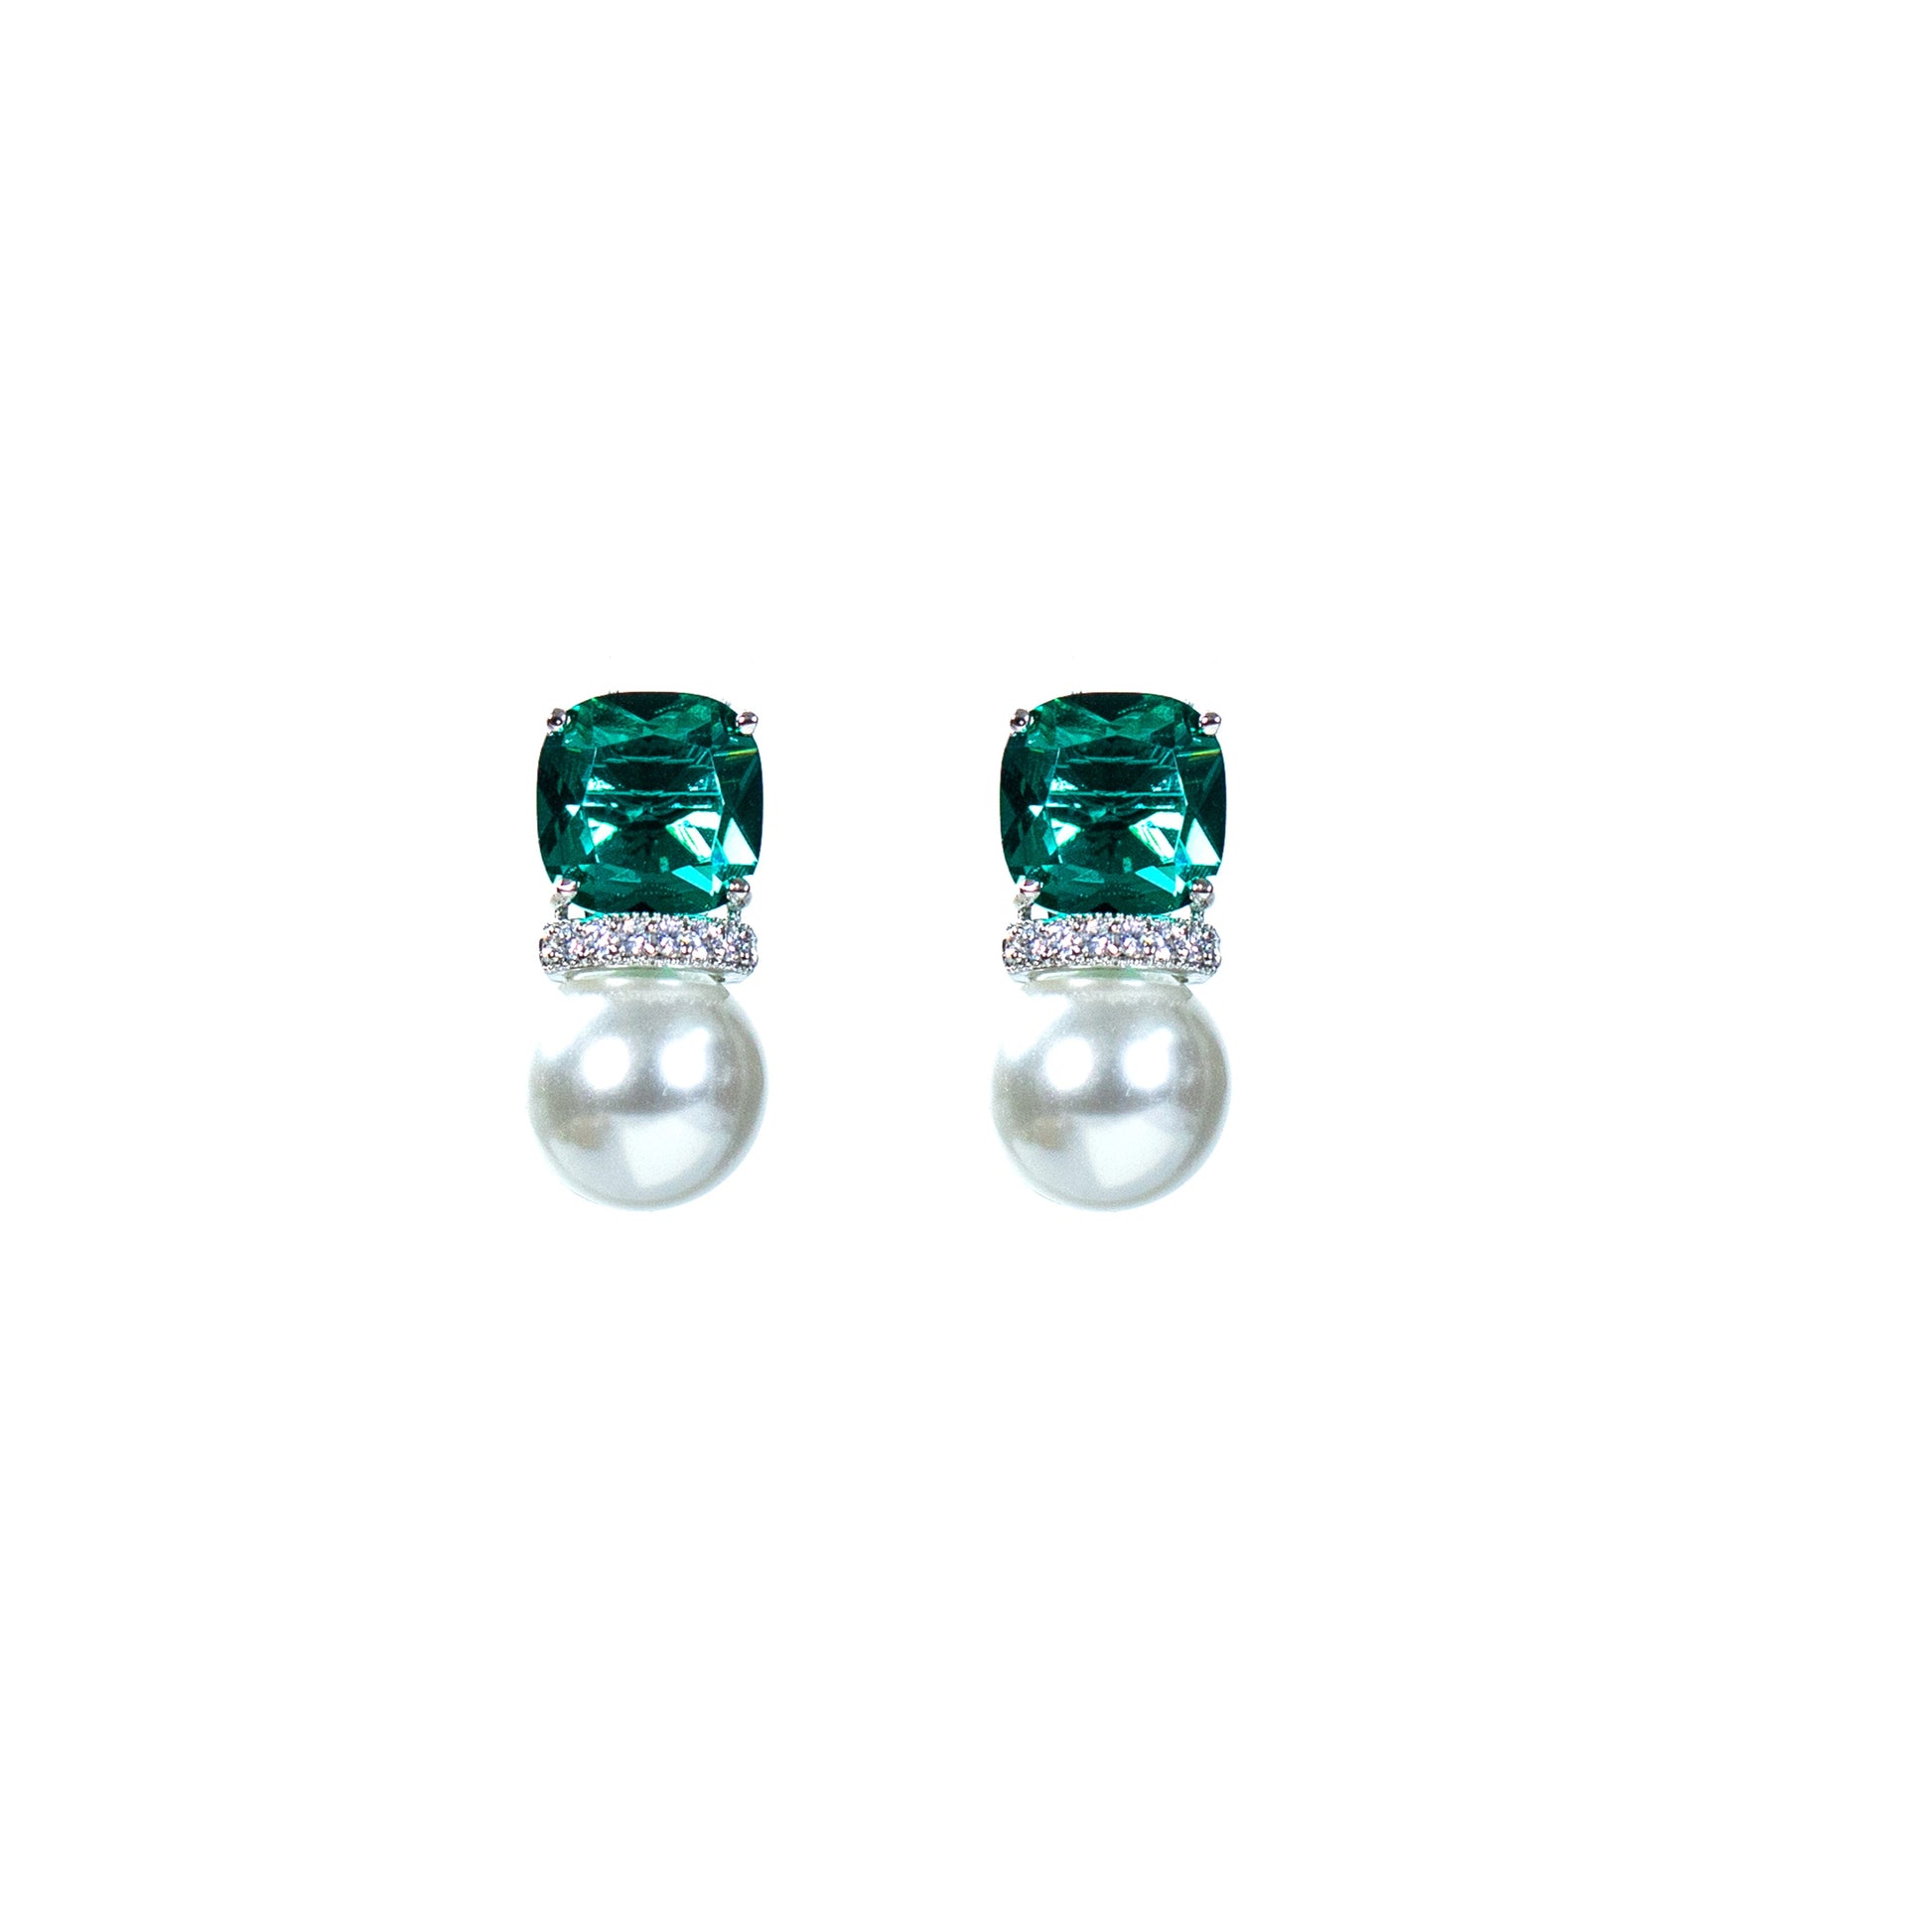 Buy pearl stud earring online